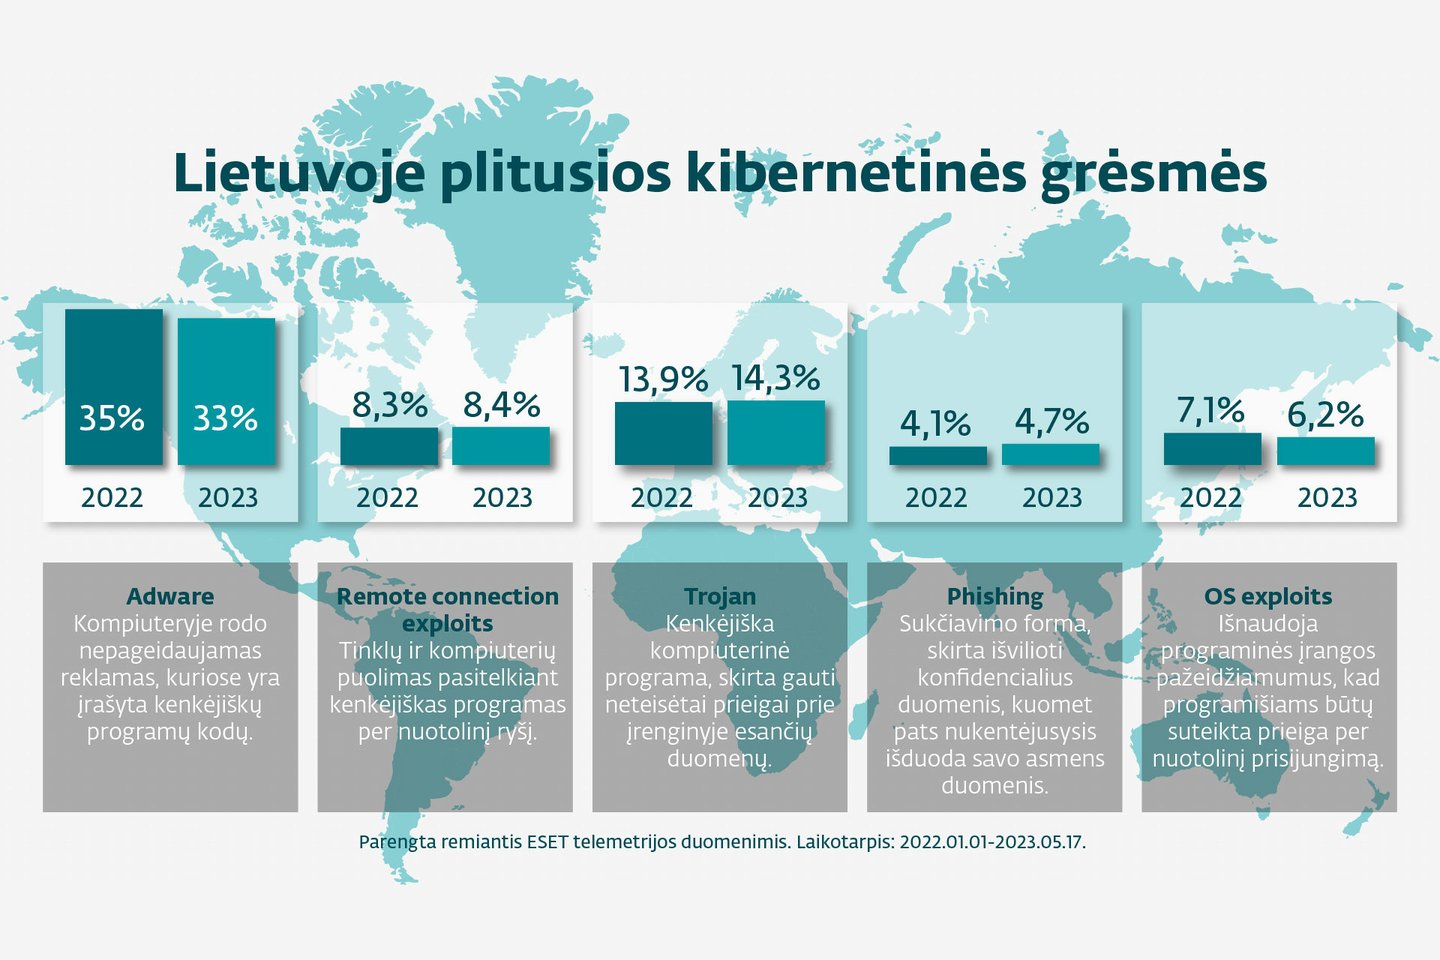  Lietuvoje paplitusios kibernetinės grėsmės.<br>ESET iliustr.